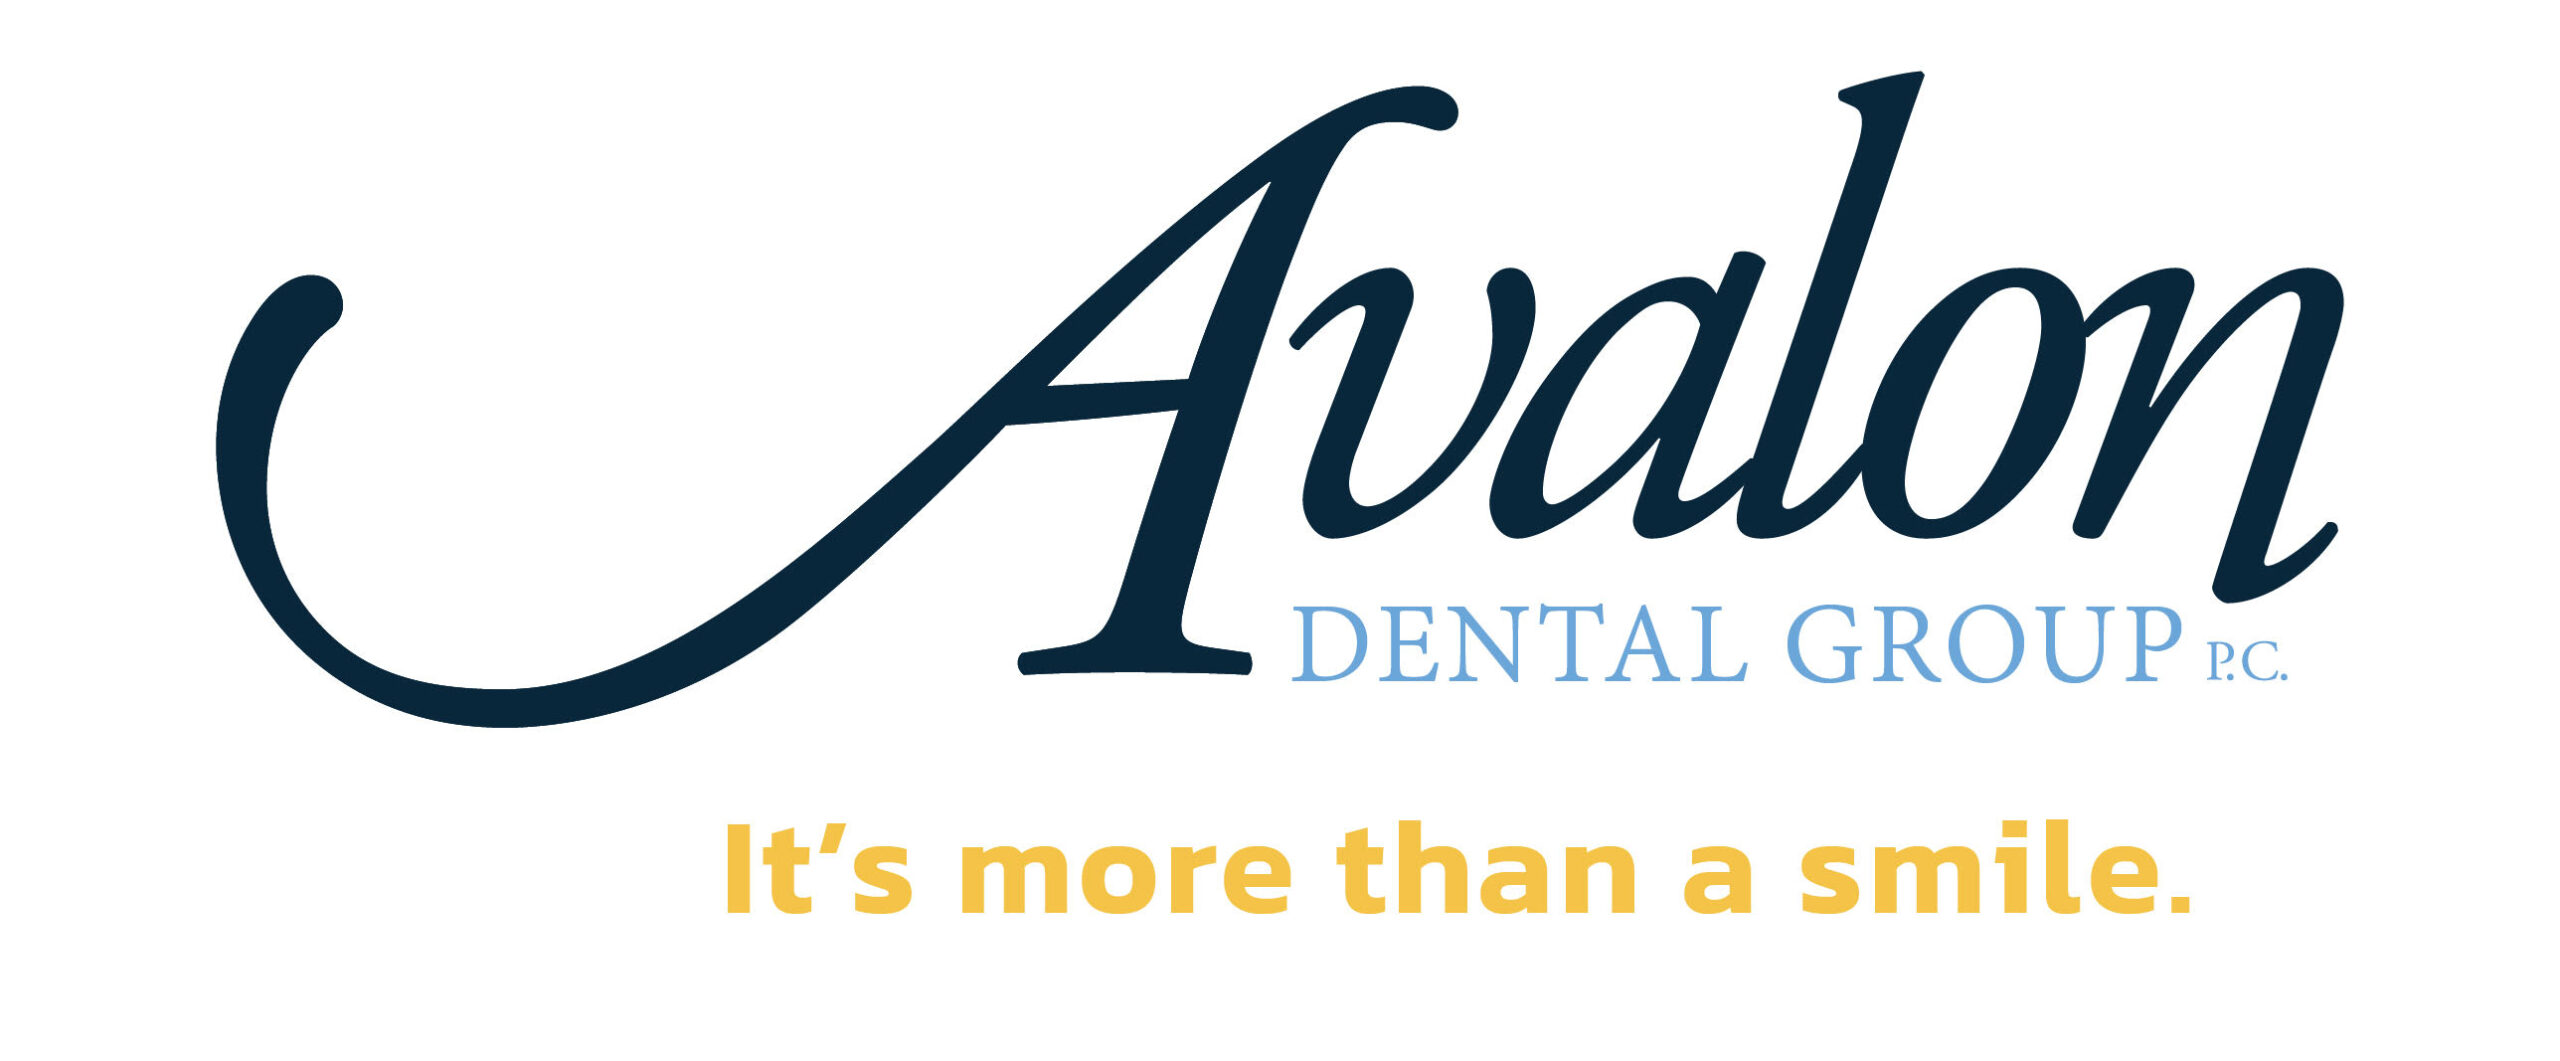 avalon dental logo